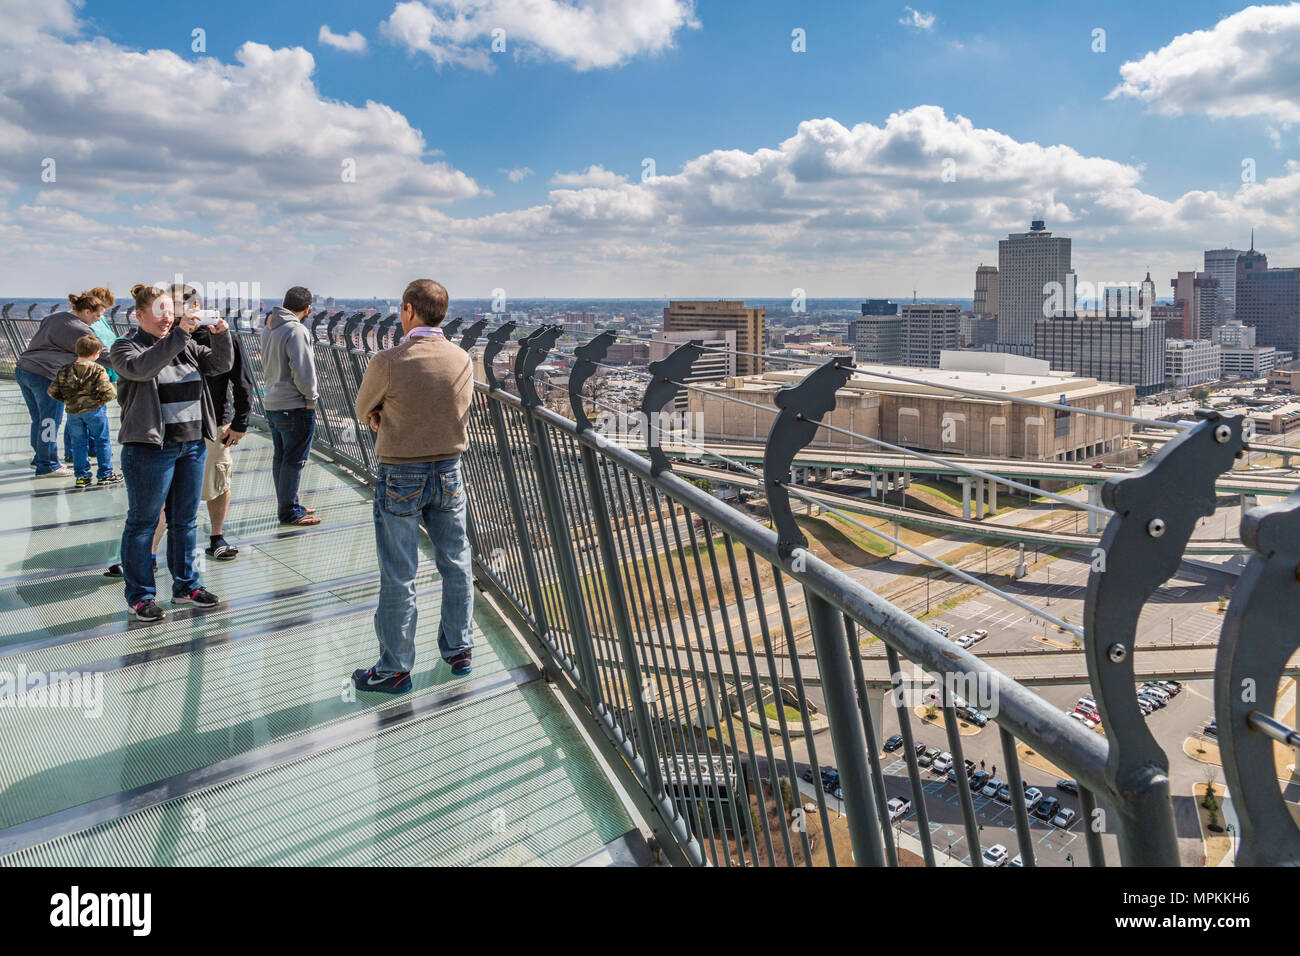 Bass Pro Shops i visitatori posano per scattare foto sulla piattaforma di osservazione vicino alla cima dell'edificio piramidale di Memphis, Tennessee Foto Stock